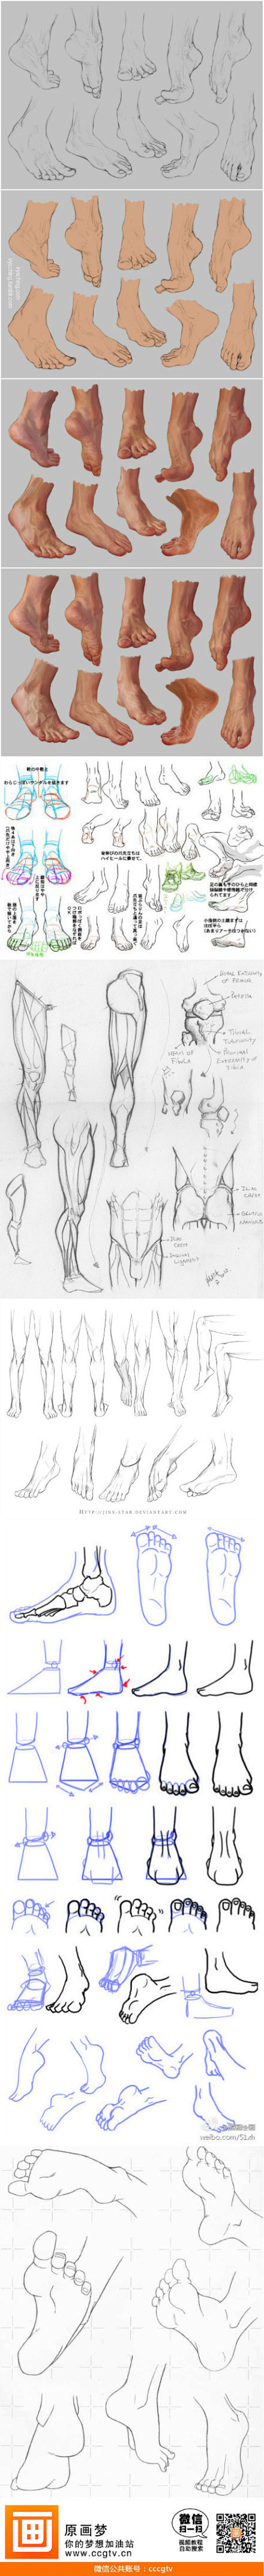 人体结构之脚的各种角度绘画和分析！超级赞...